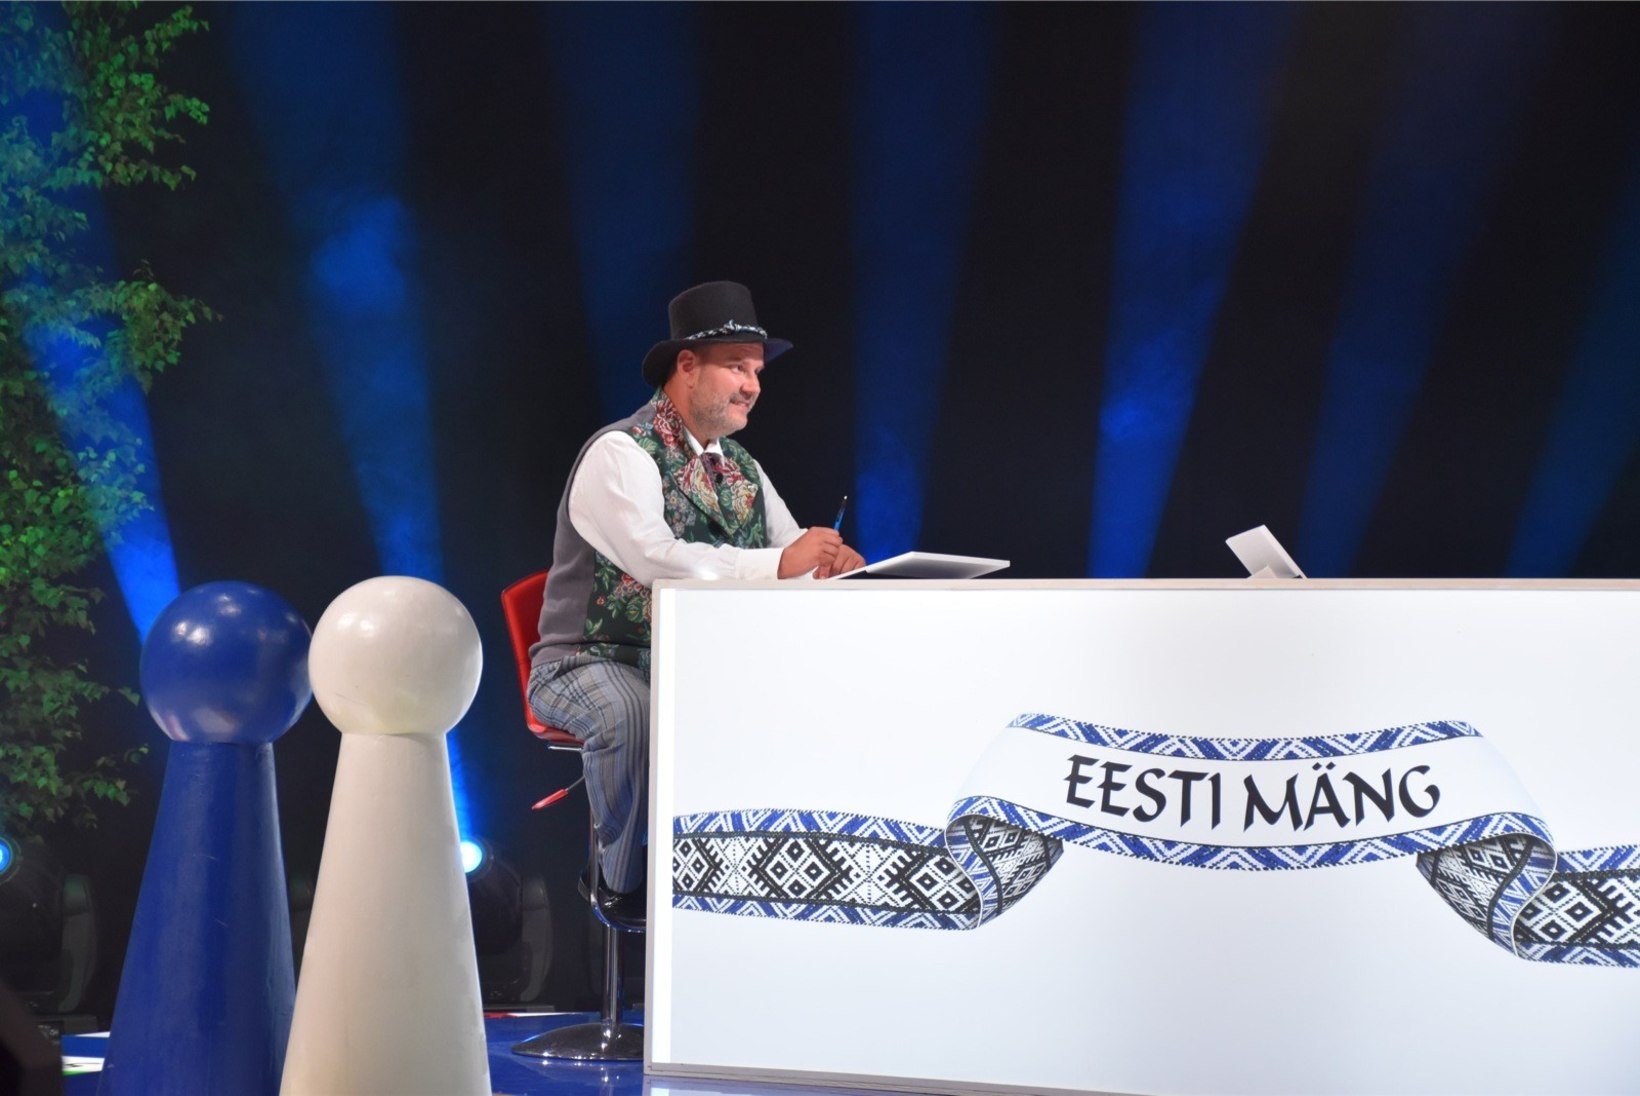 TELETOP | “Eesti mäng” on endiselt vaadatuim telesaade